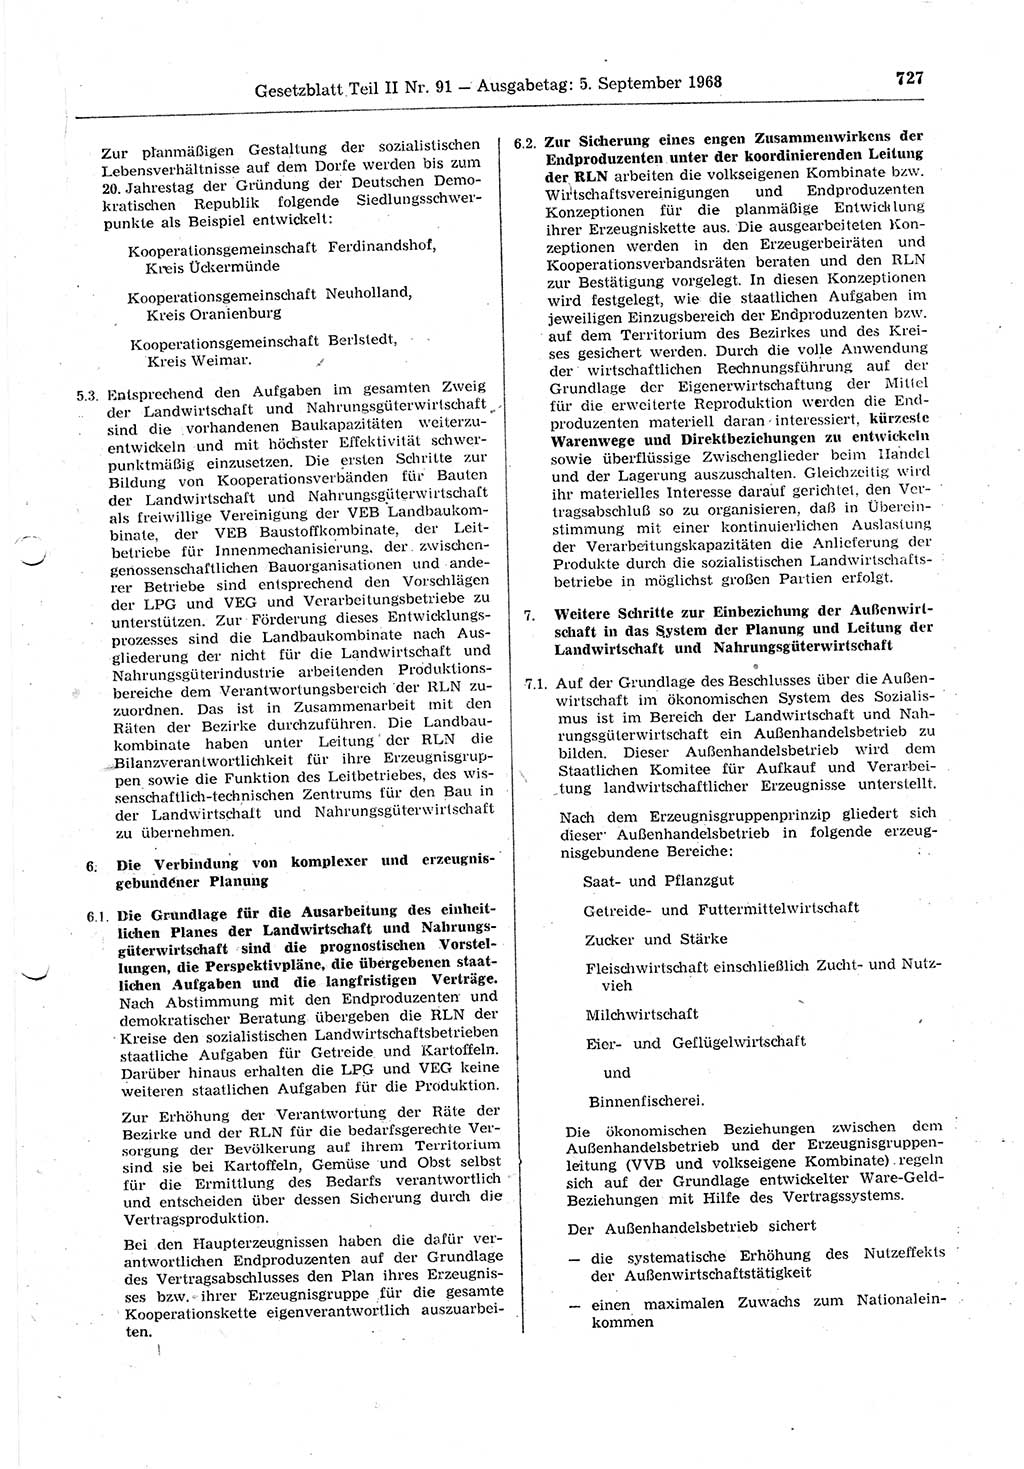 Gesetzblatt (GBl.) der Deutschen Demokratischen Republik (DDR) Teil ⅠⅠ 1968, Seite 727 (GBl. DDR ⅠⅠ 1968, S. 727)